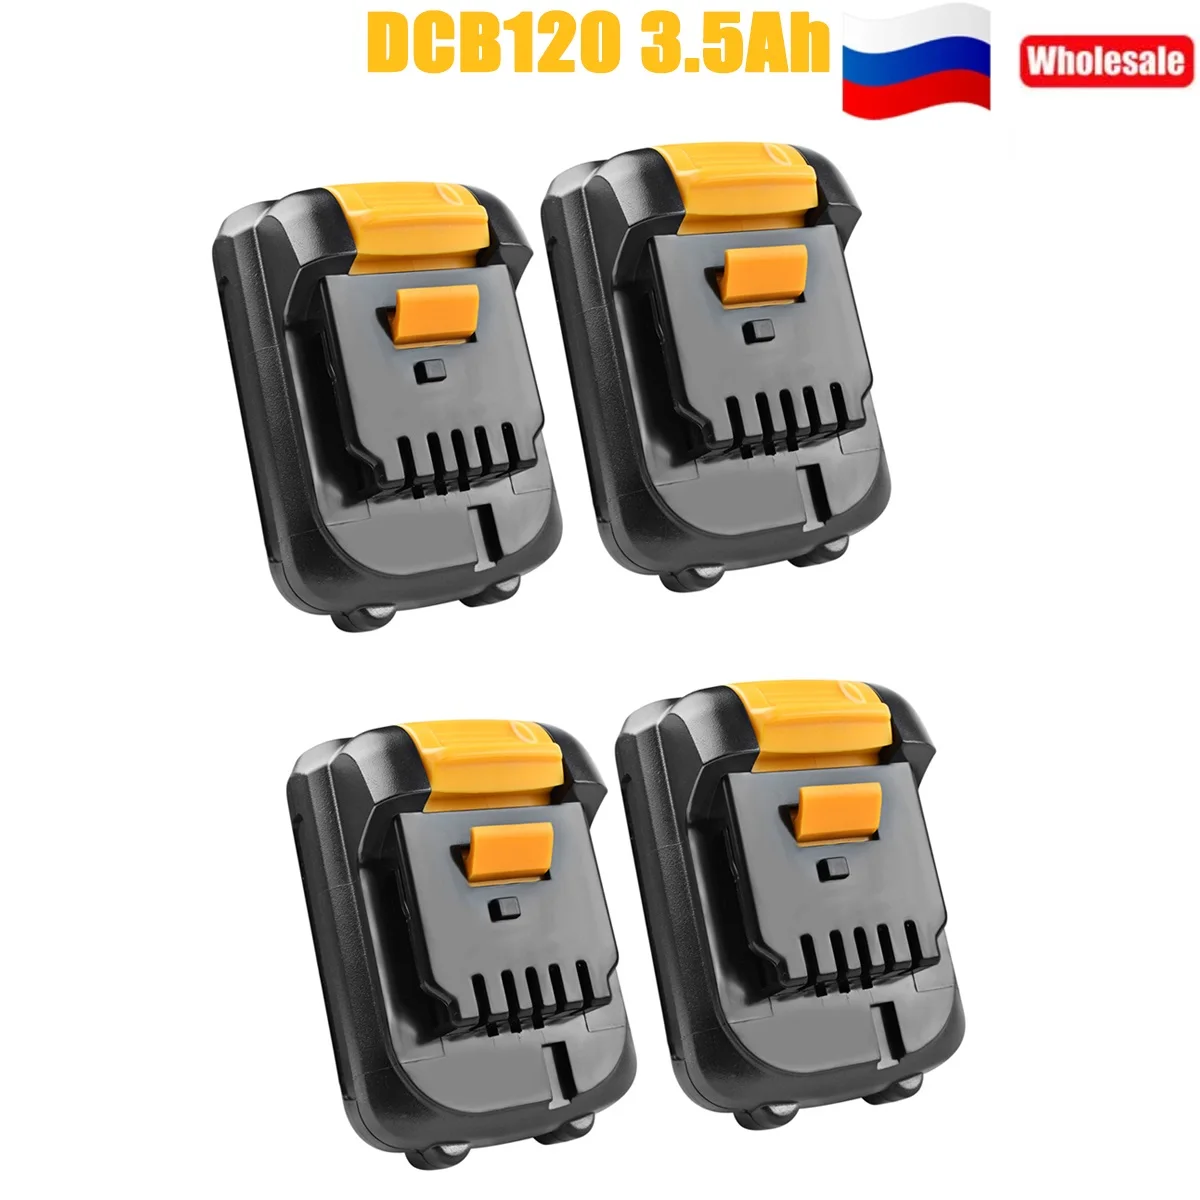 

For Dewalt 12V Battery 3.5Ah DCB120 DCB123 DCB127 DCB121 DCD710S2 DCF610S2 DCF805 DCF815 DCF813S2 DCS310B Replacement Battery